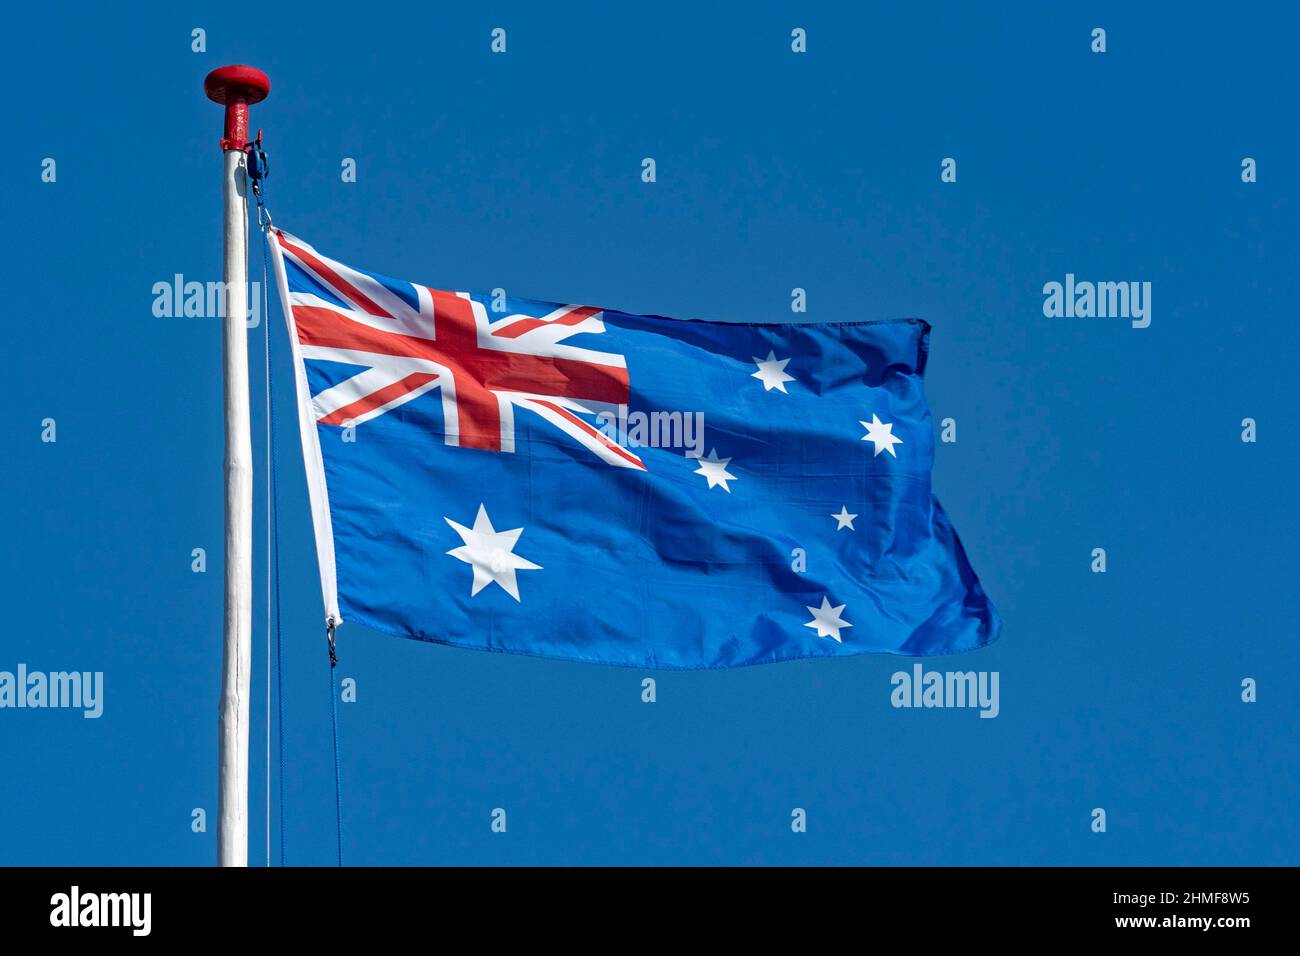 Drapeau australien contre un ciel bleu, Australie Banque D'Images